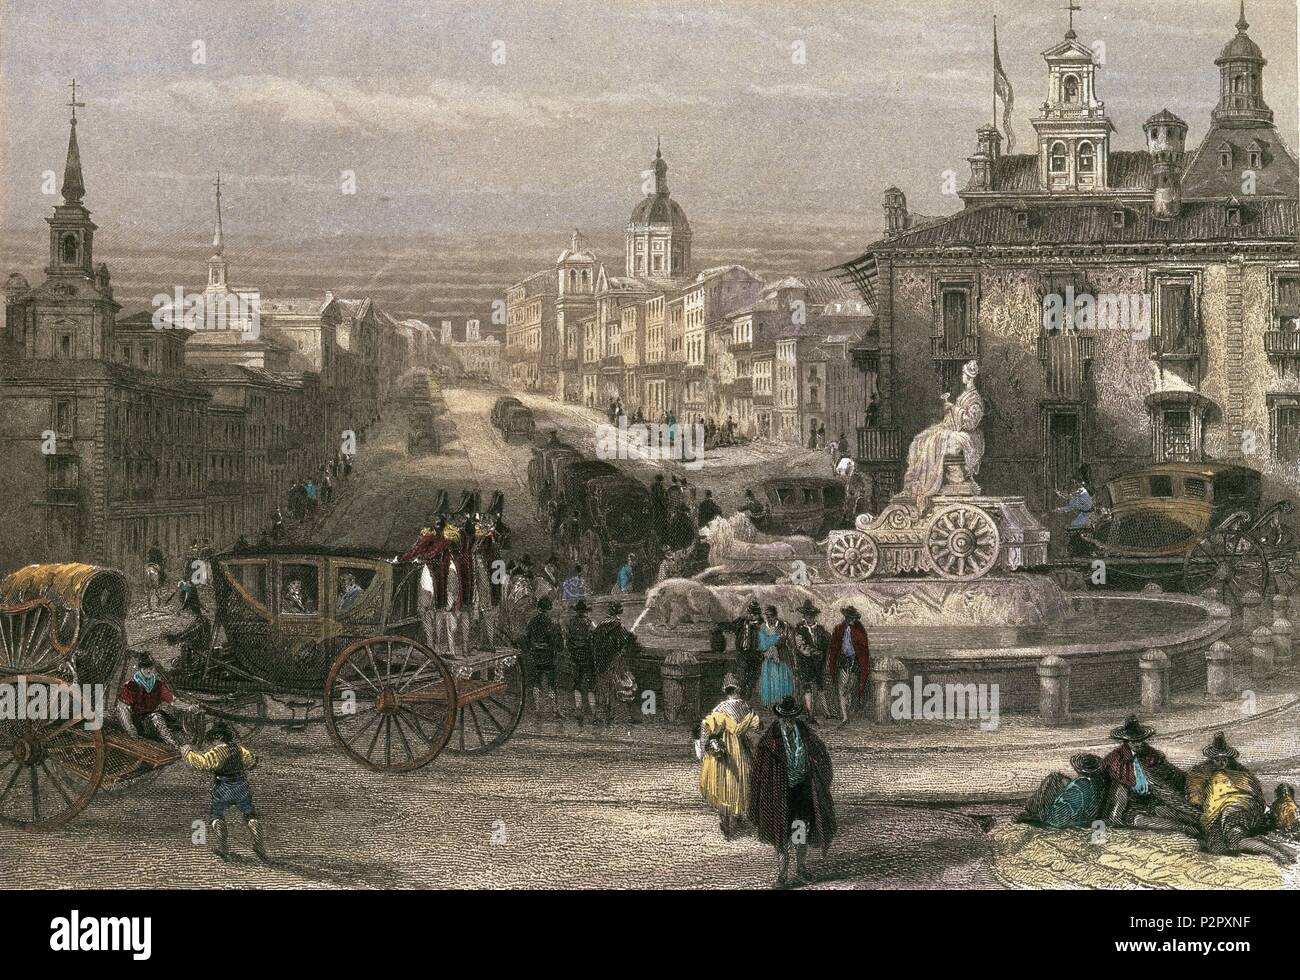 MADRID-CIBELES Y calle Alcala-GRABADO S XIX POR JT WILMORE- romanticismo. Autore: David Roberts (1796-1864). Posizione: Museo de Historia-GRABADOS COLOREADOS, Spagna. Foto Stock